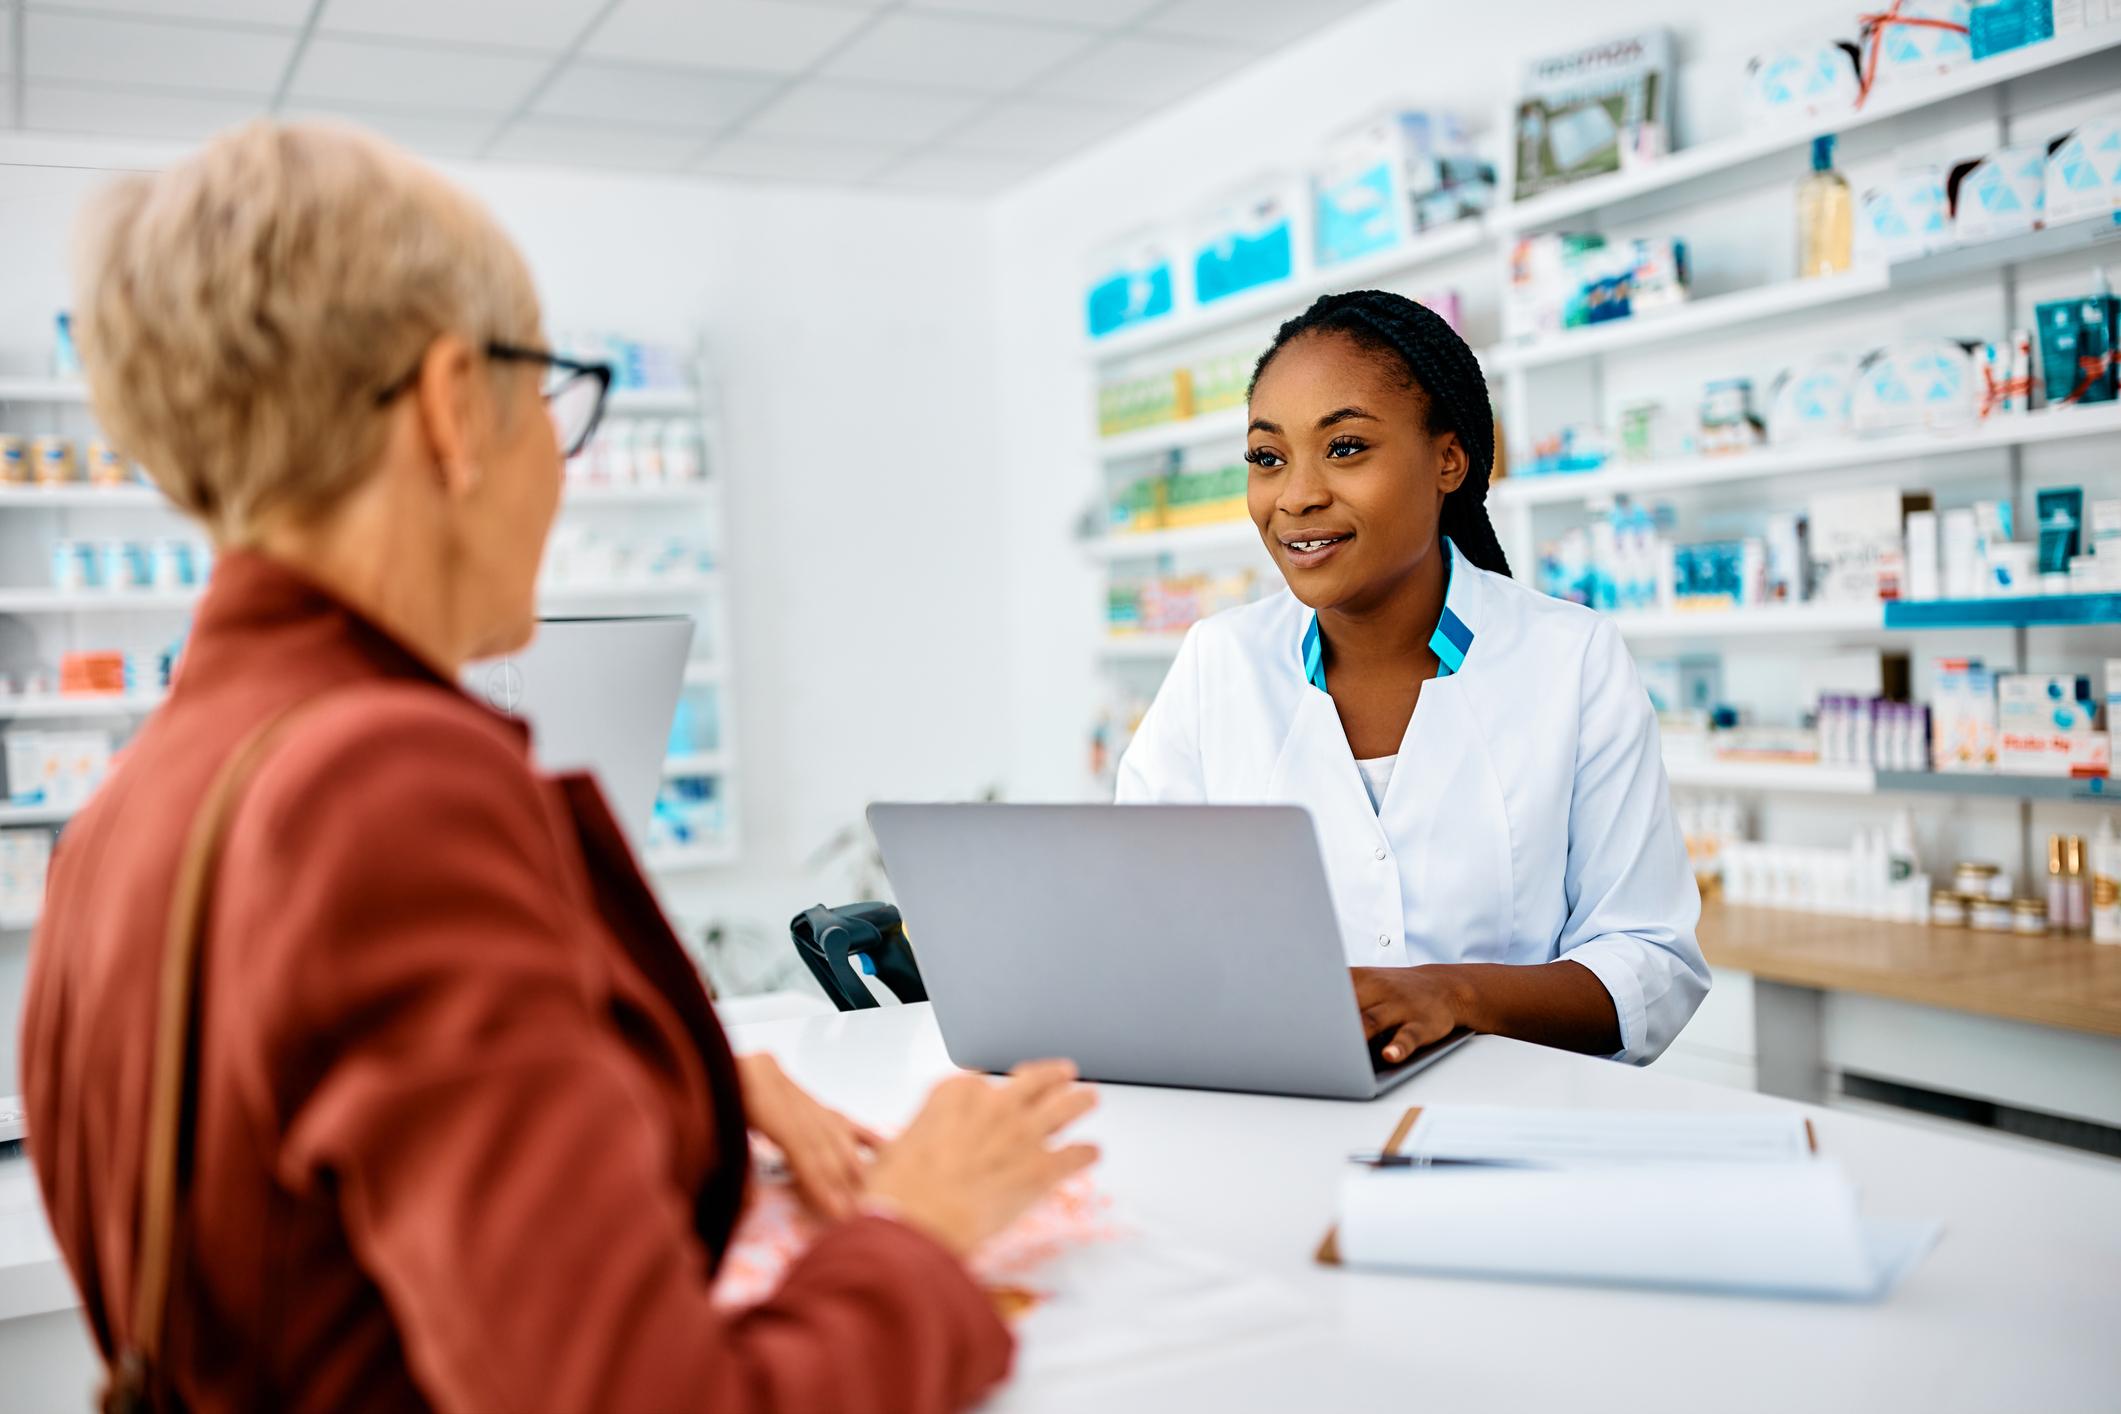 Les rendez-vous de prévention : une nouvelle mission pour les pharmaciens